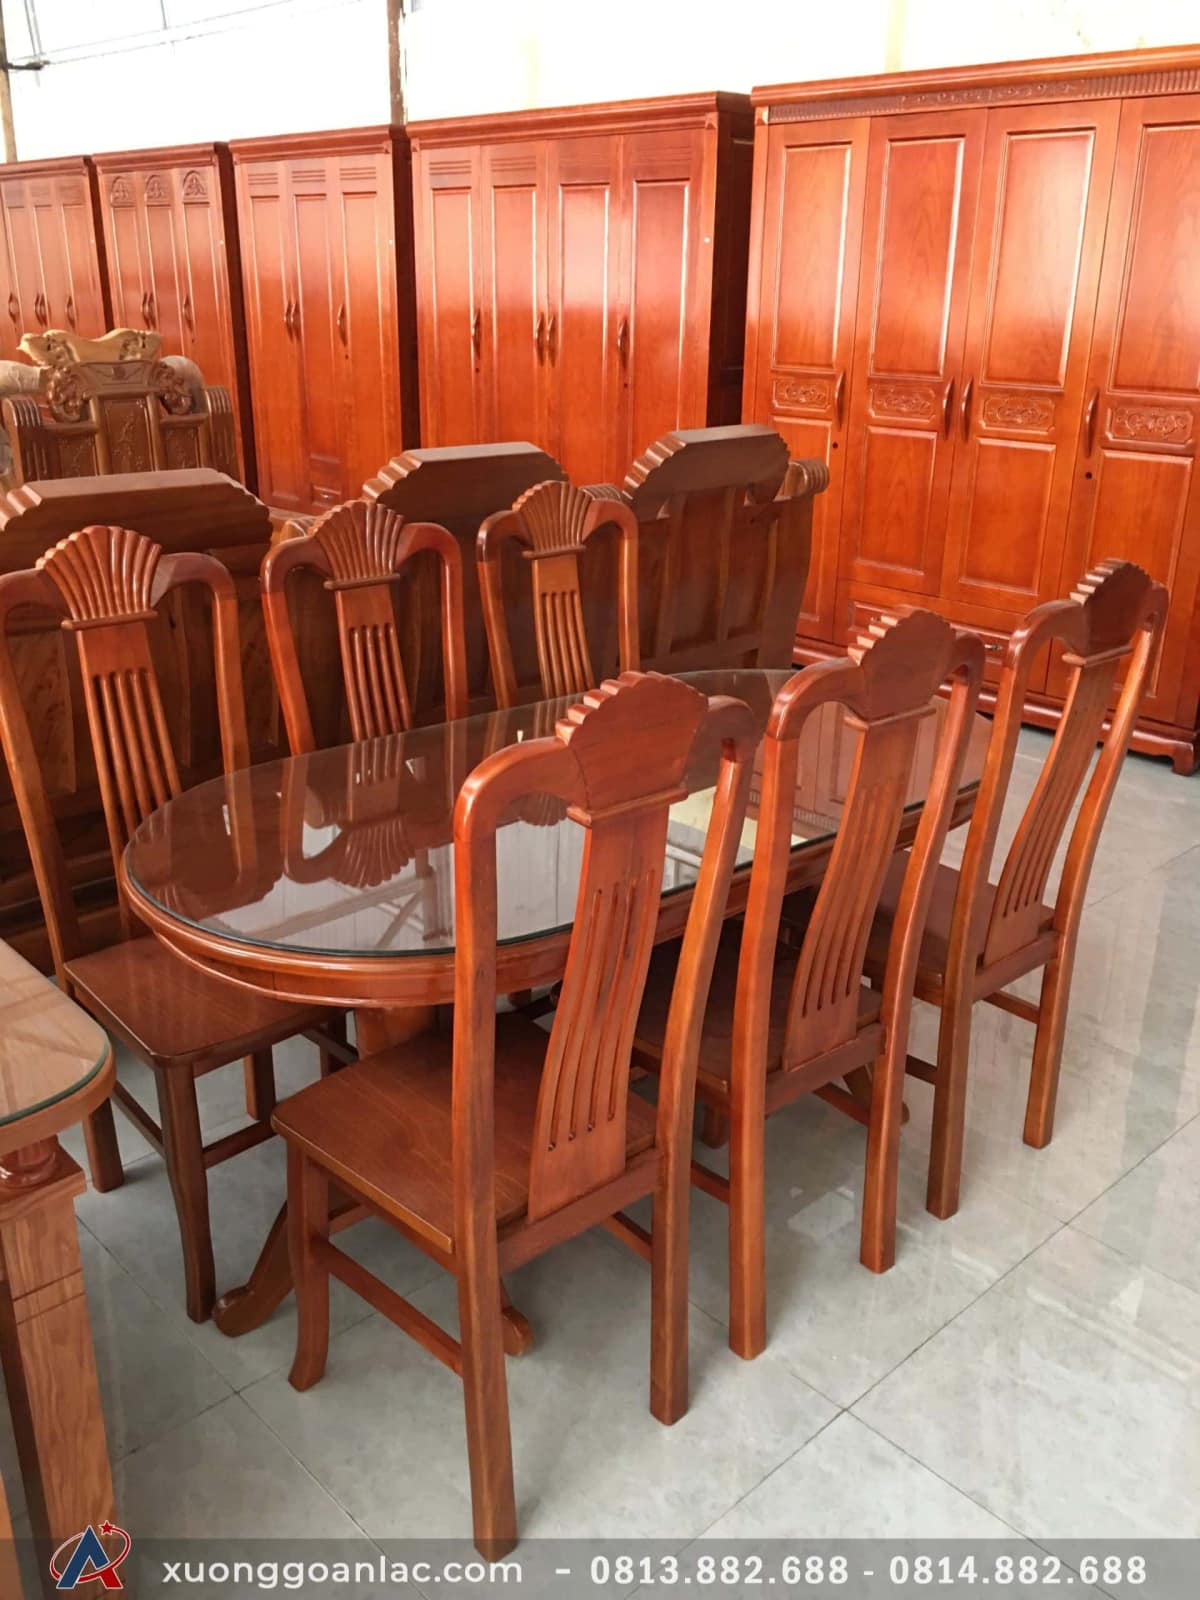 Bộ bàn ghế ăn gỗ xoan đào mẫu bàn bầu dục 6 ghế